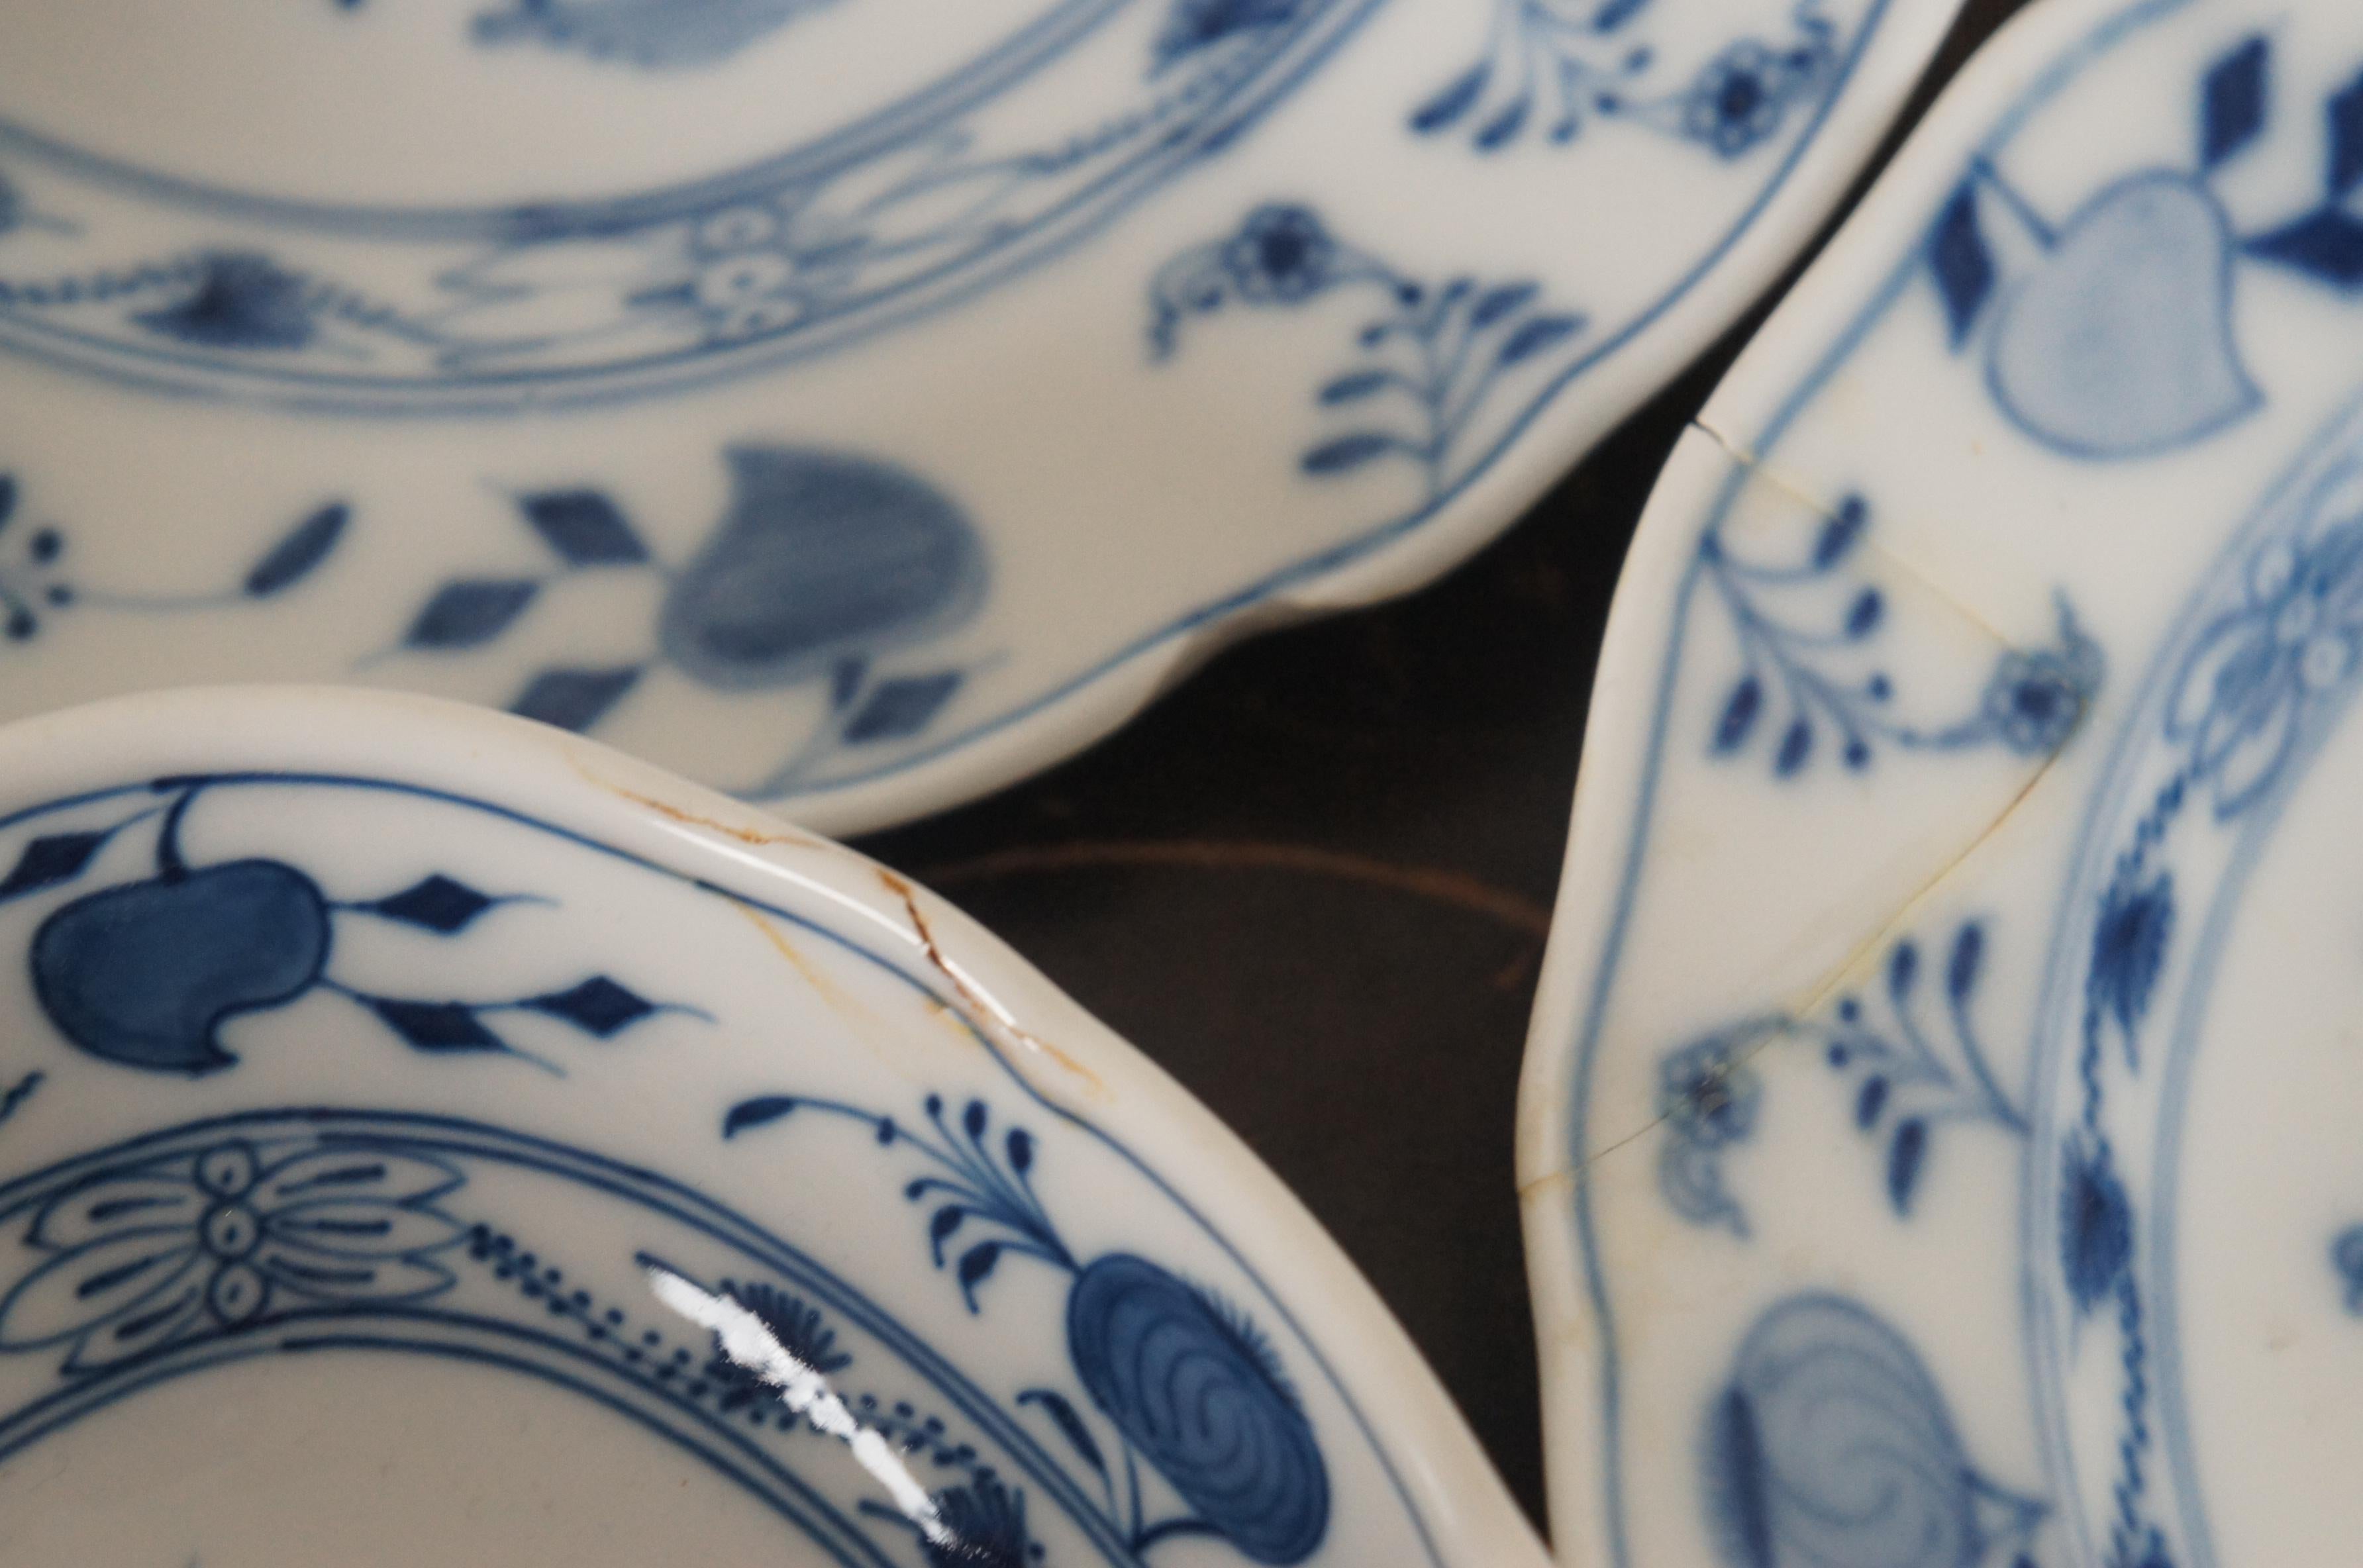 blue onion china pattern